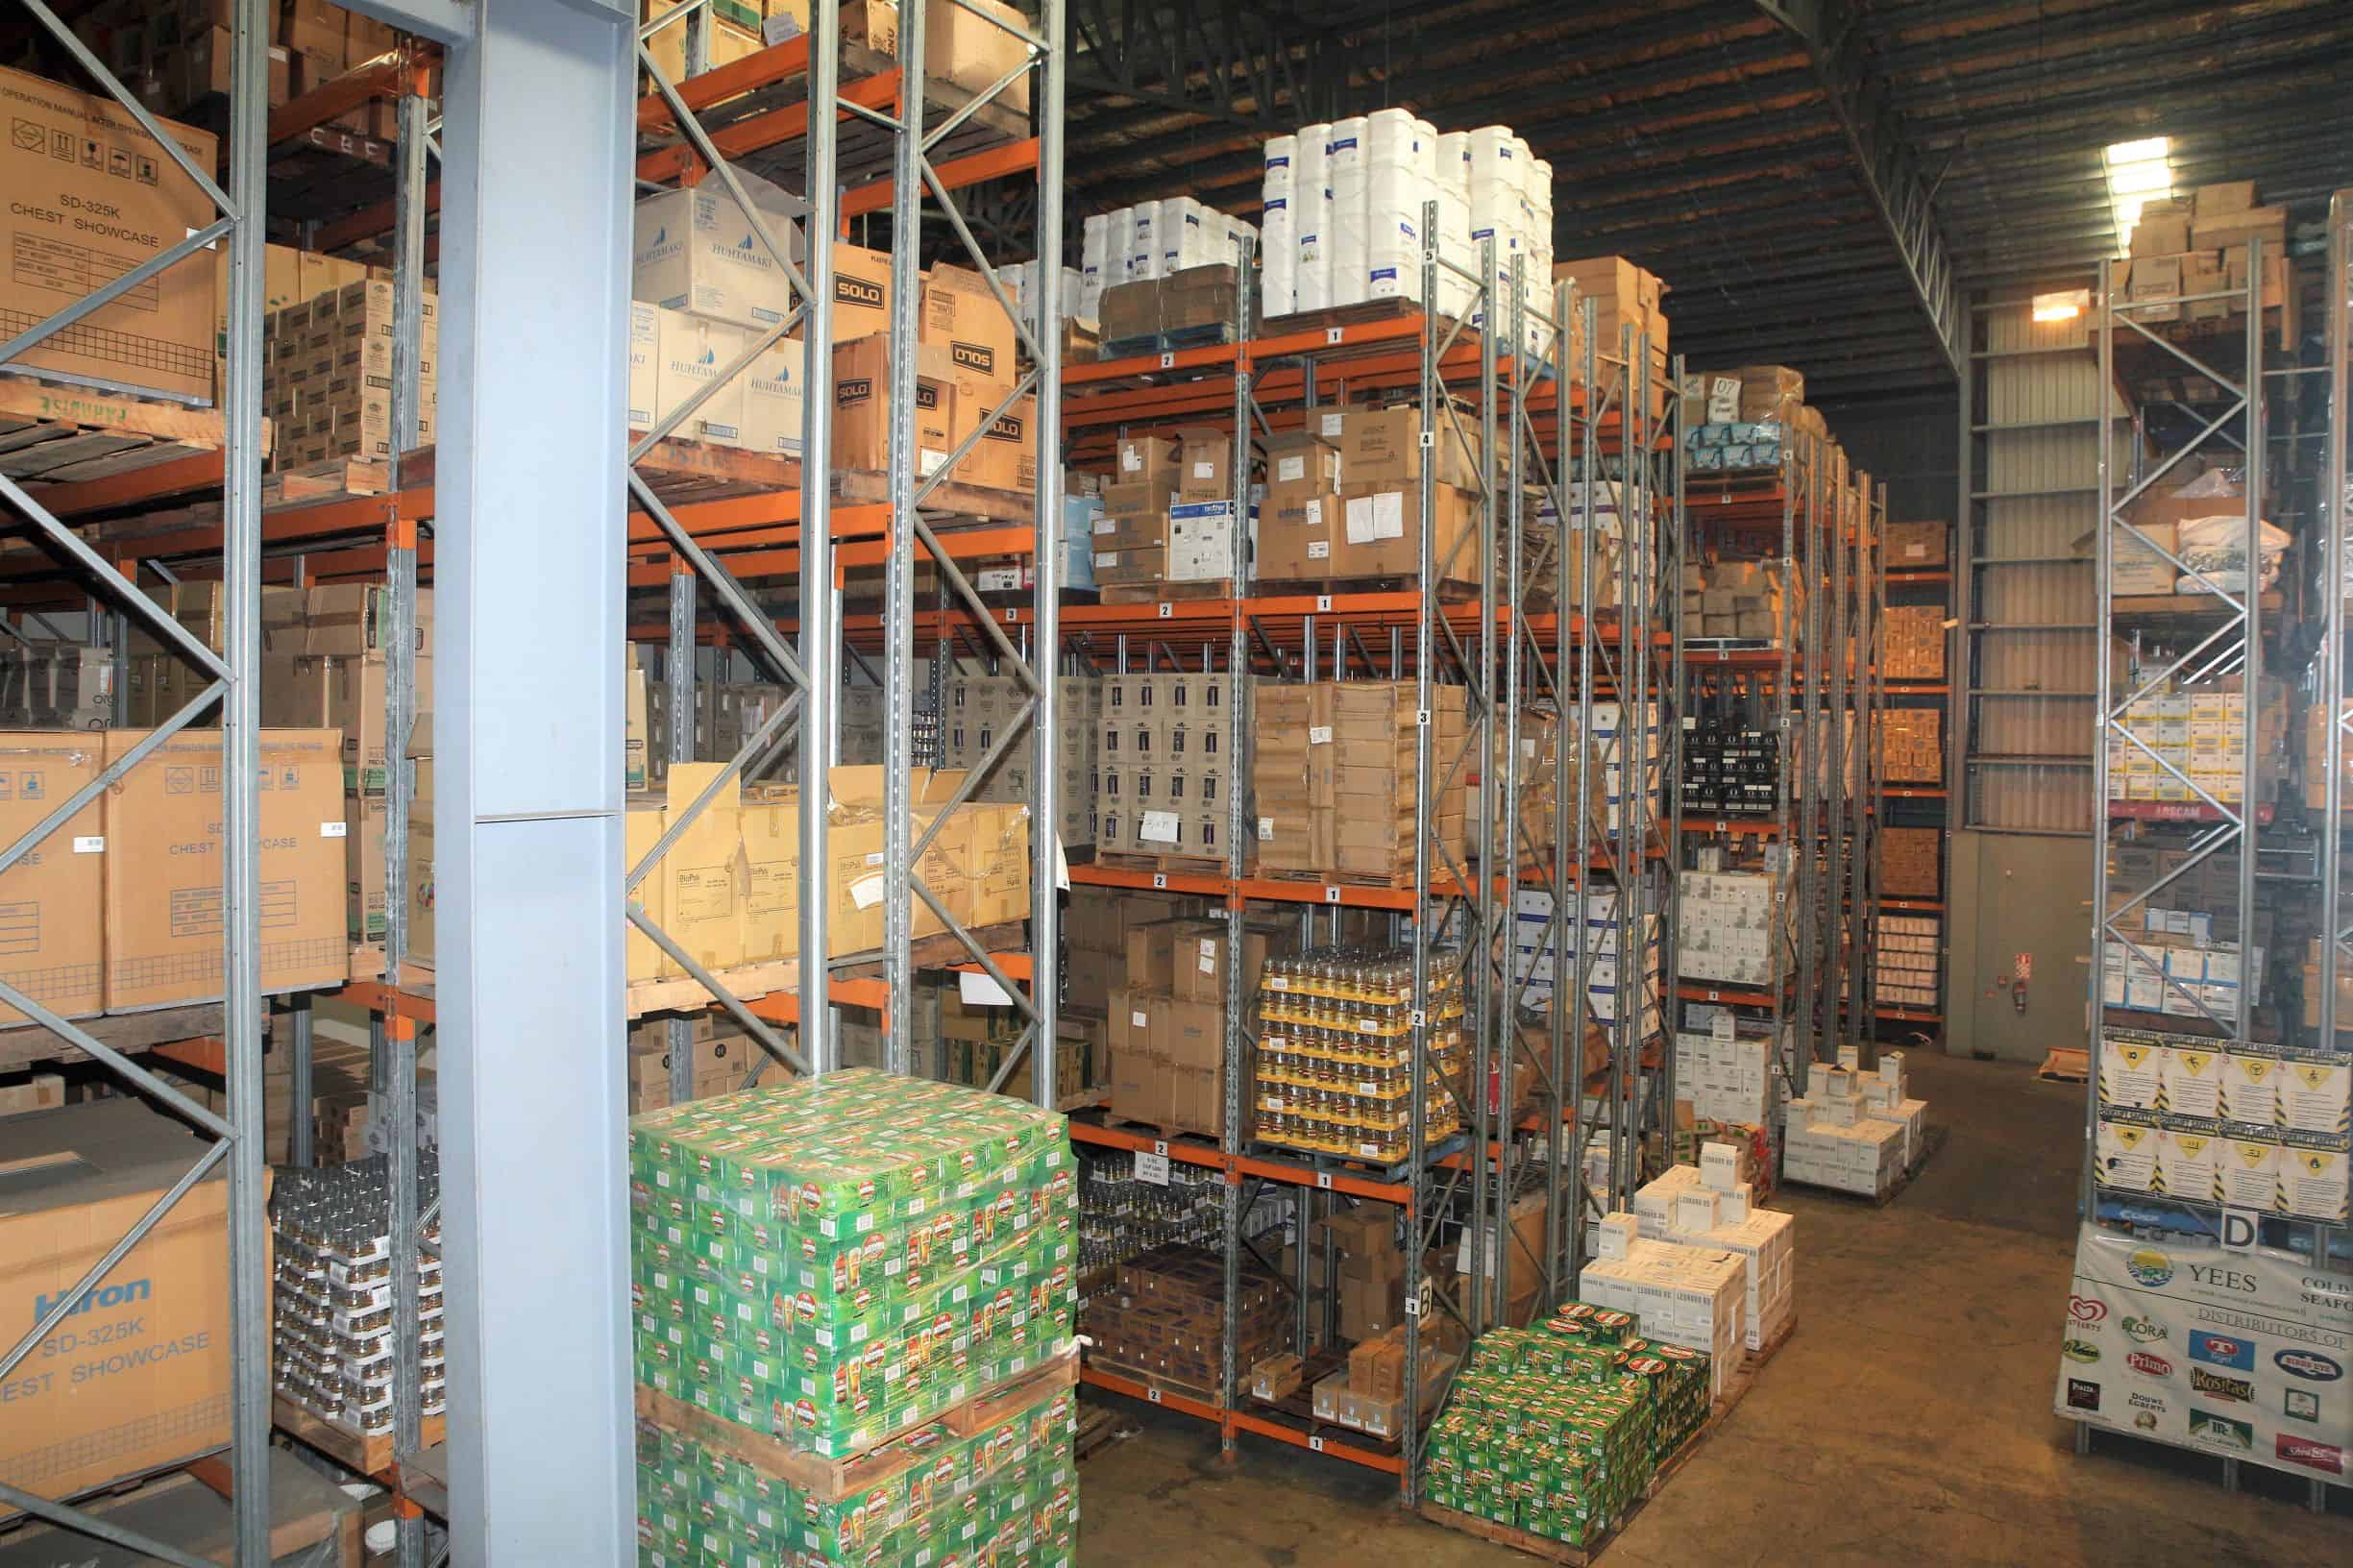 Yee's Dry Goods Warehousing